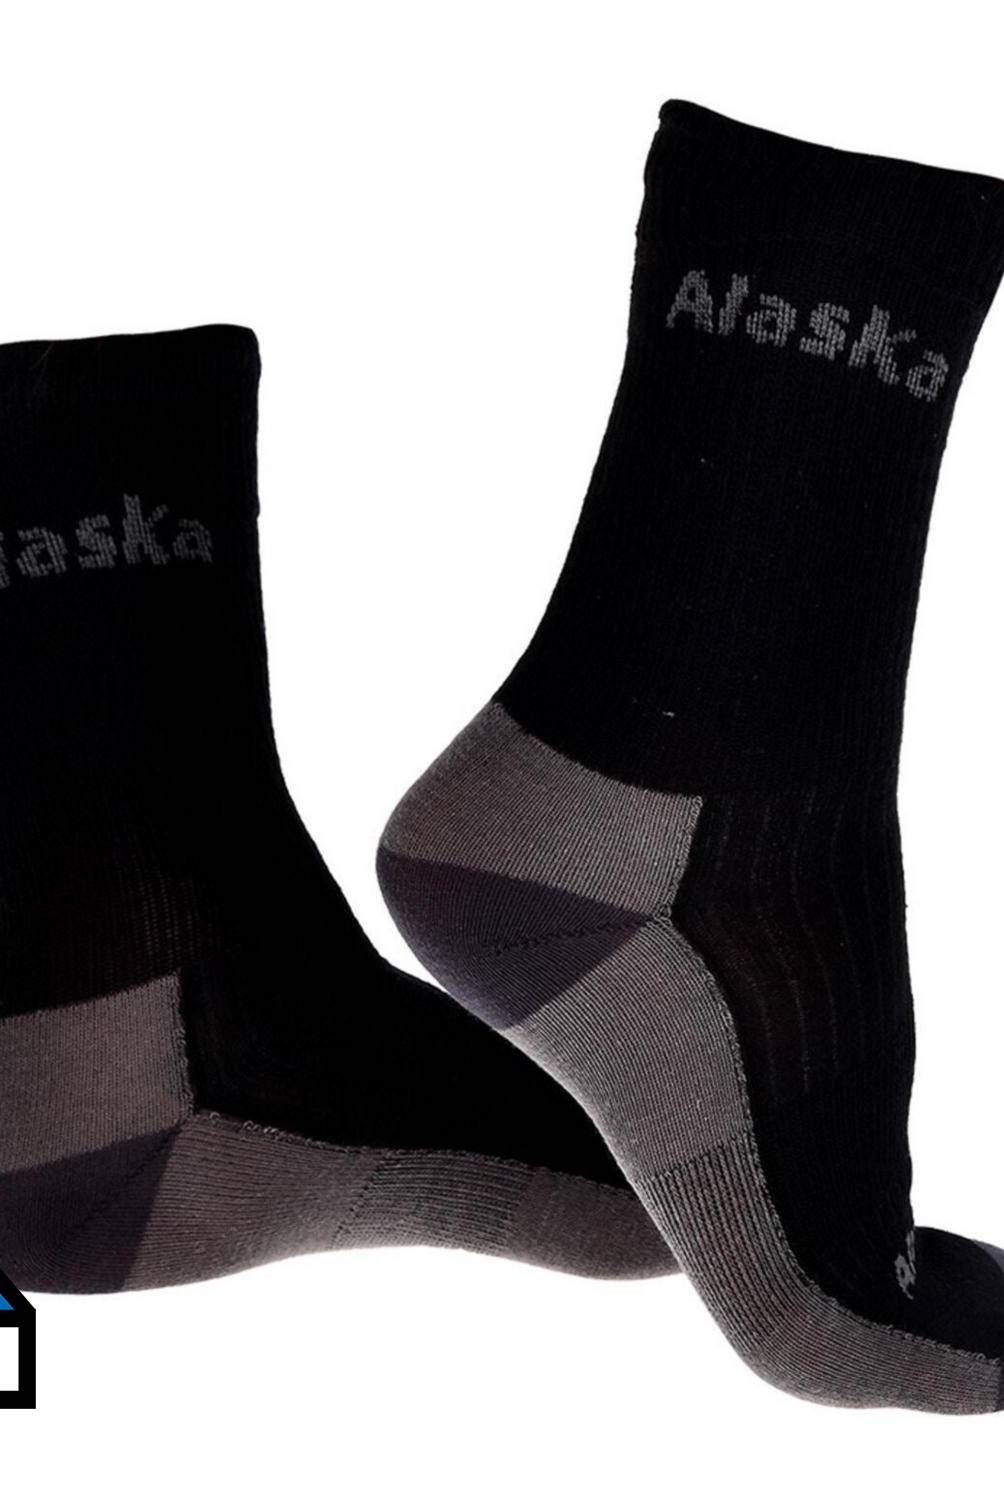 ALASKA - Pack 5 calcetines alaska negro classic algodón.